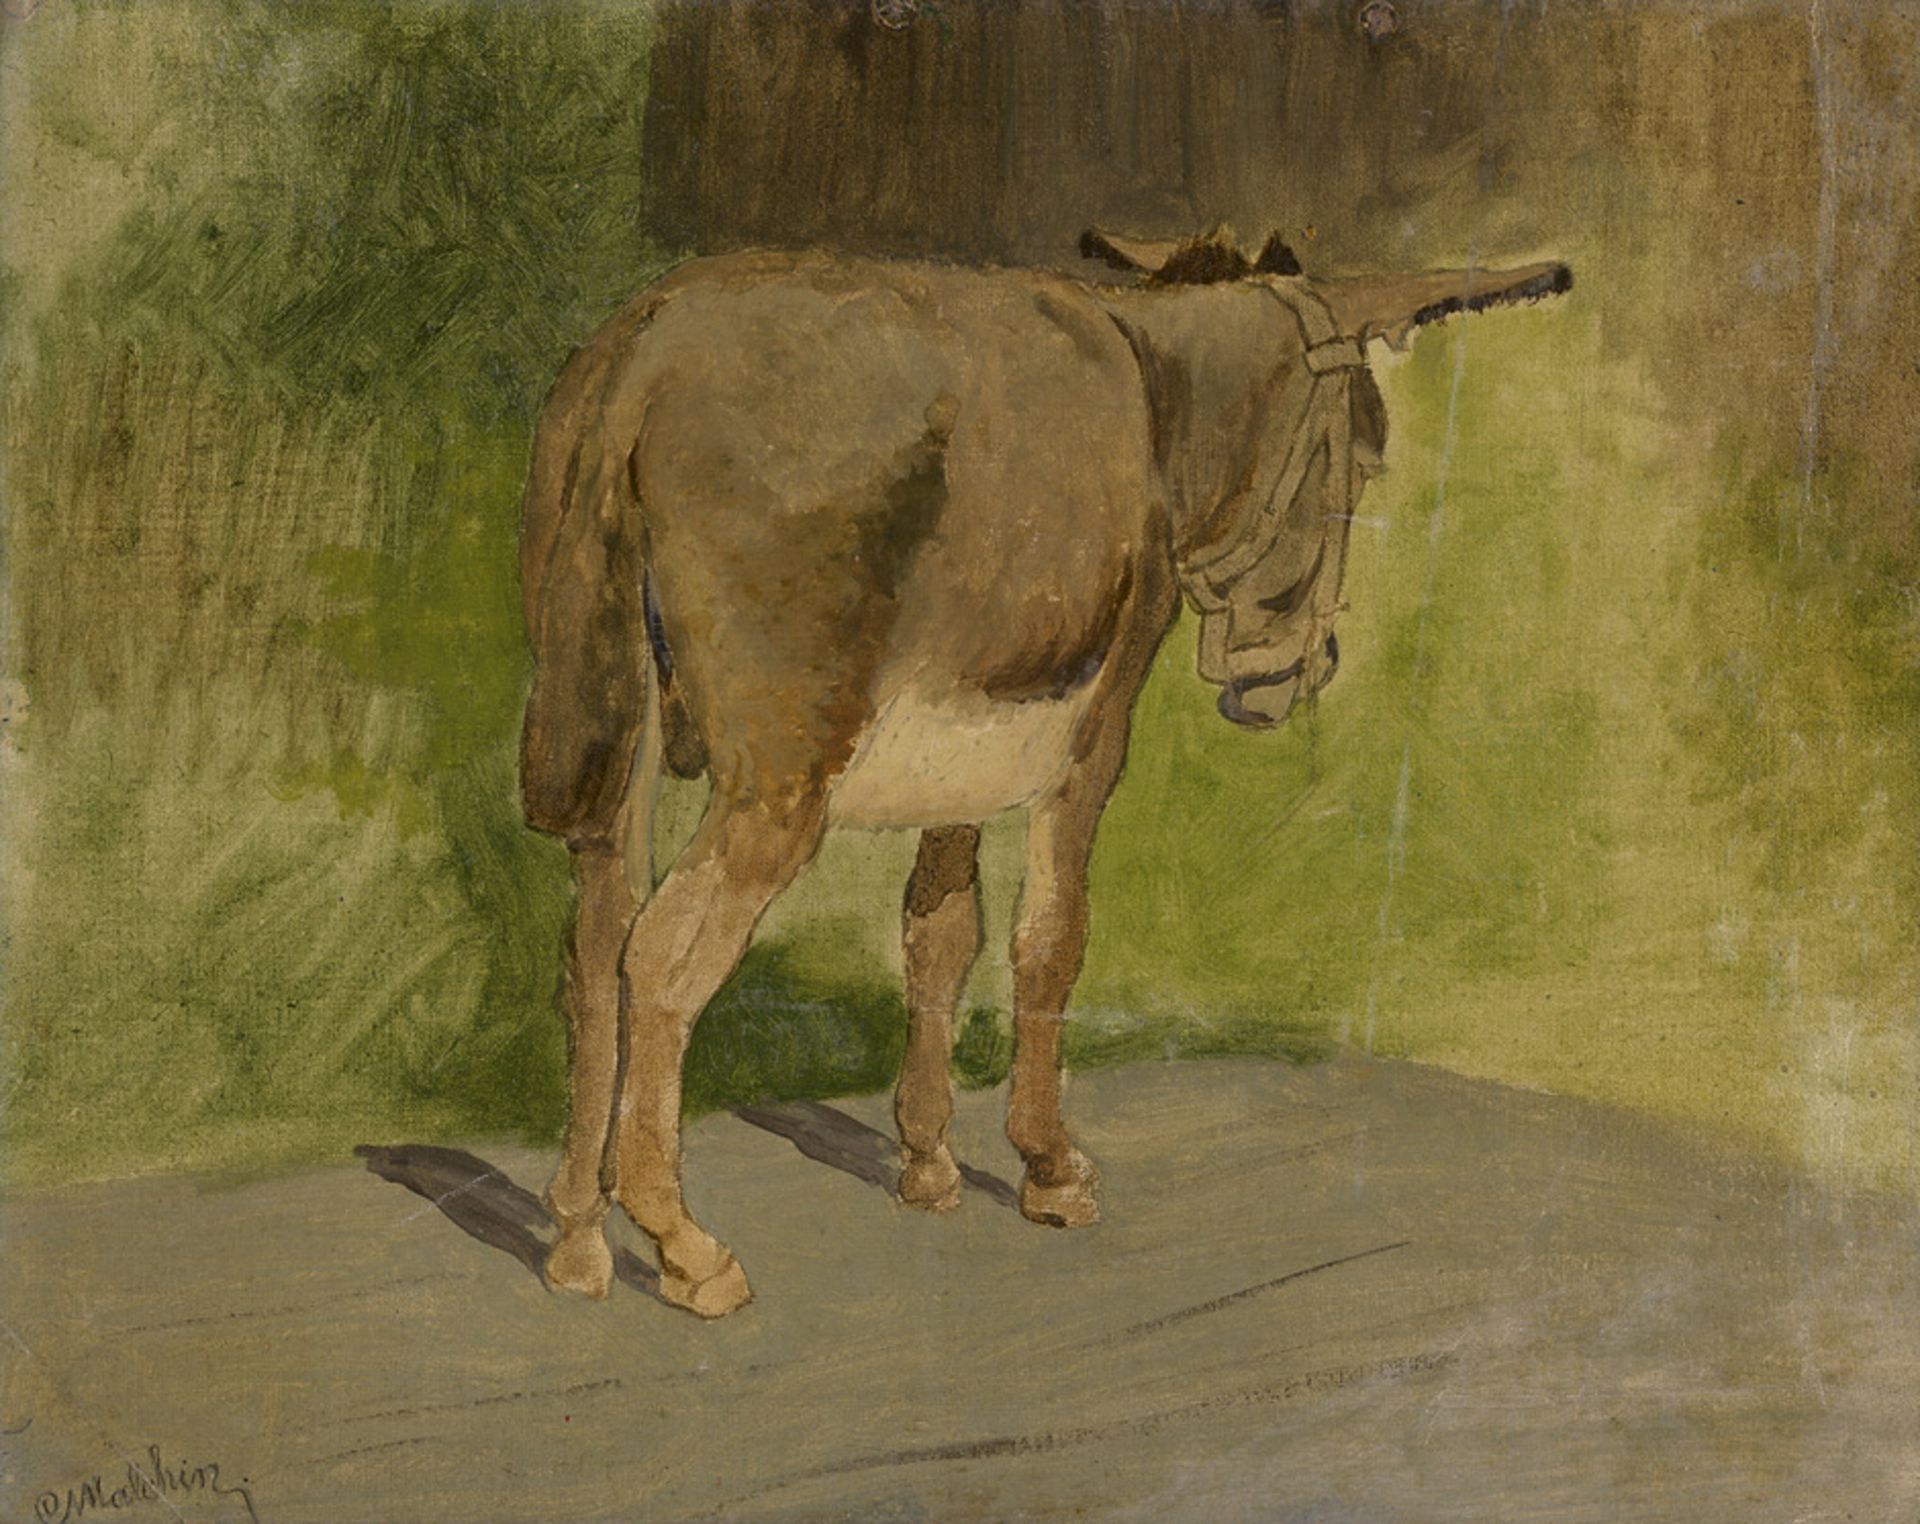 Malchin, Carl: Stehender Esel Stehender Esel. Öl auf Leinwand, auf Pappe aufgezogen. 37 x 47 cm.